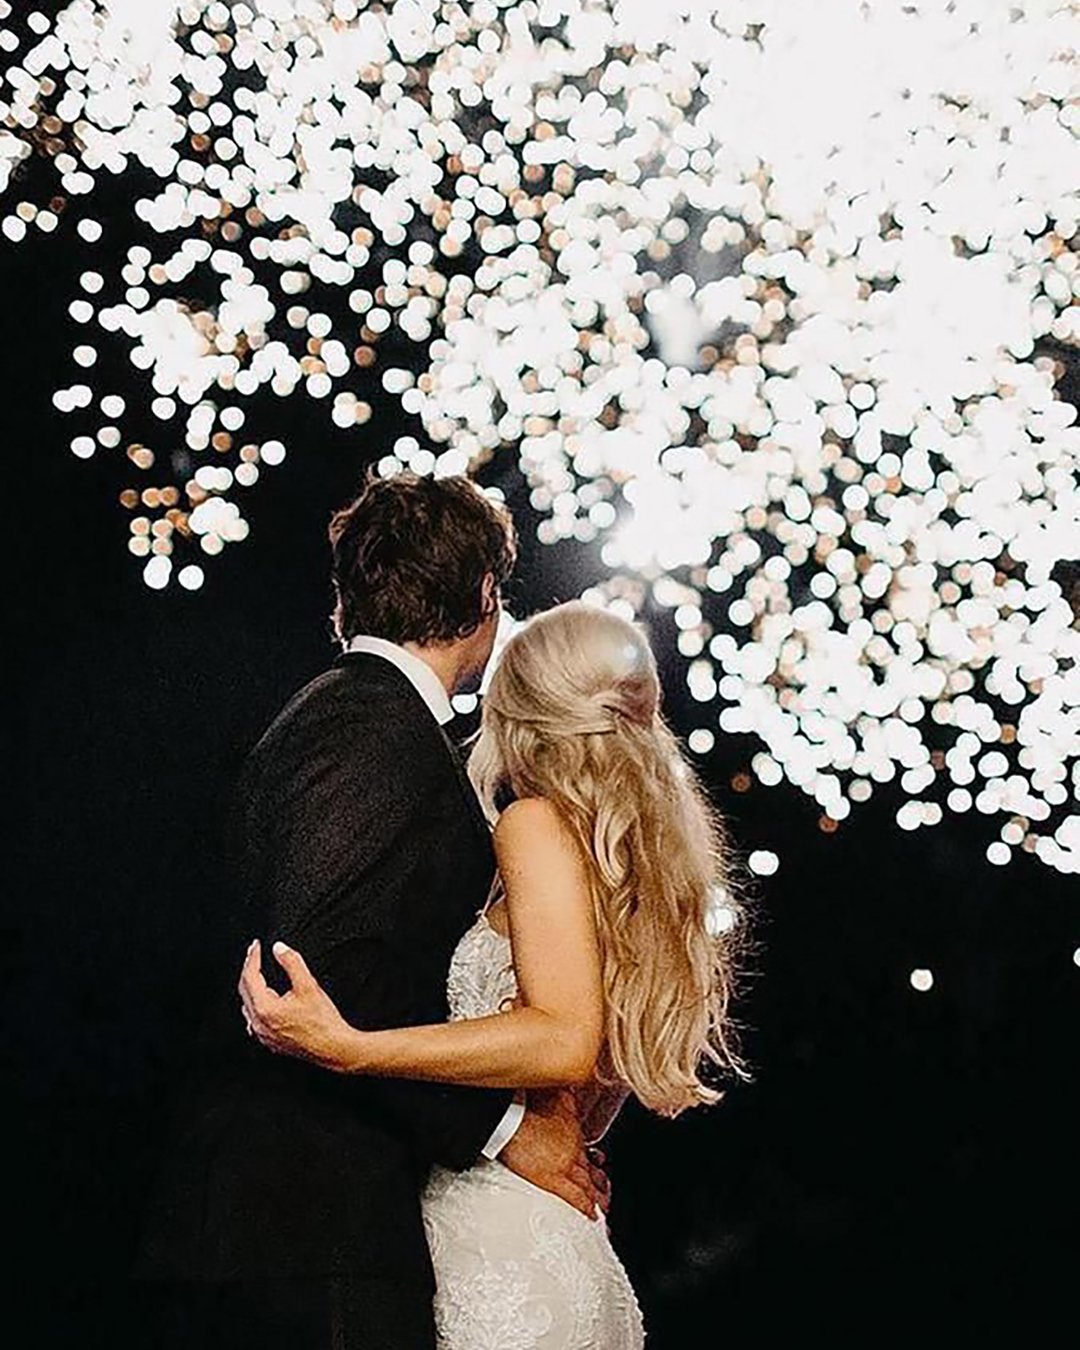 popular wedding photo ideas couple under silver fireworks janelle elise photo